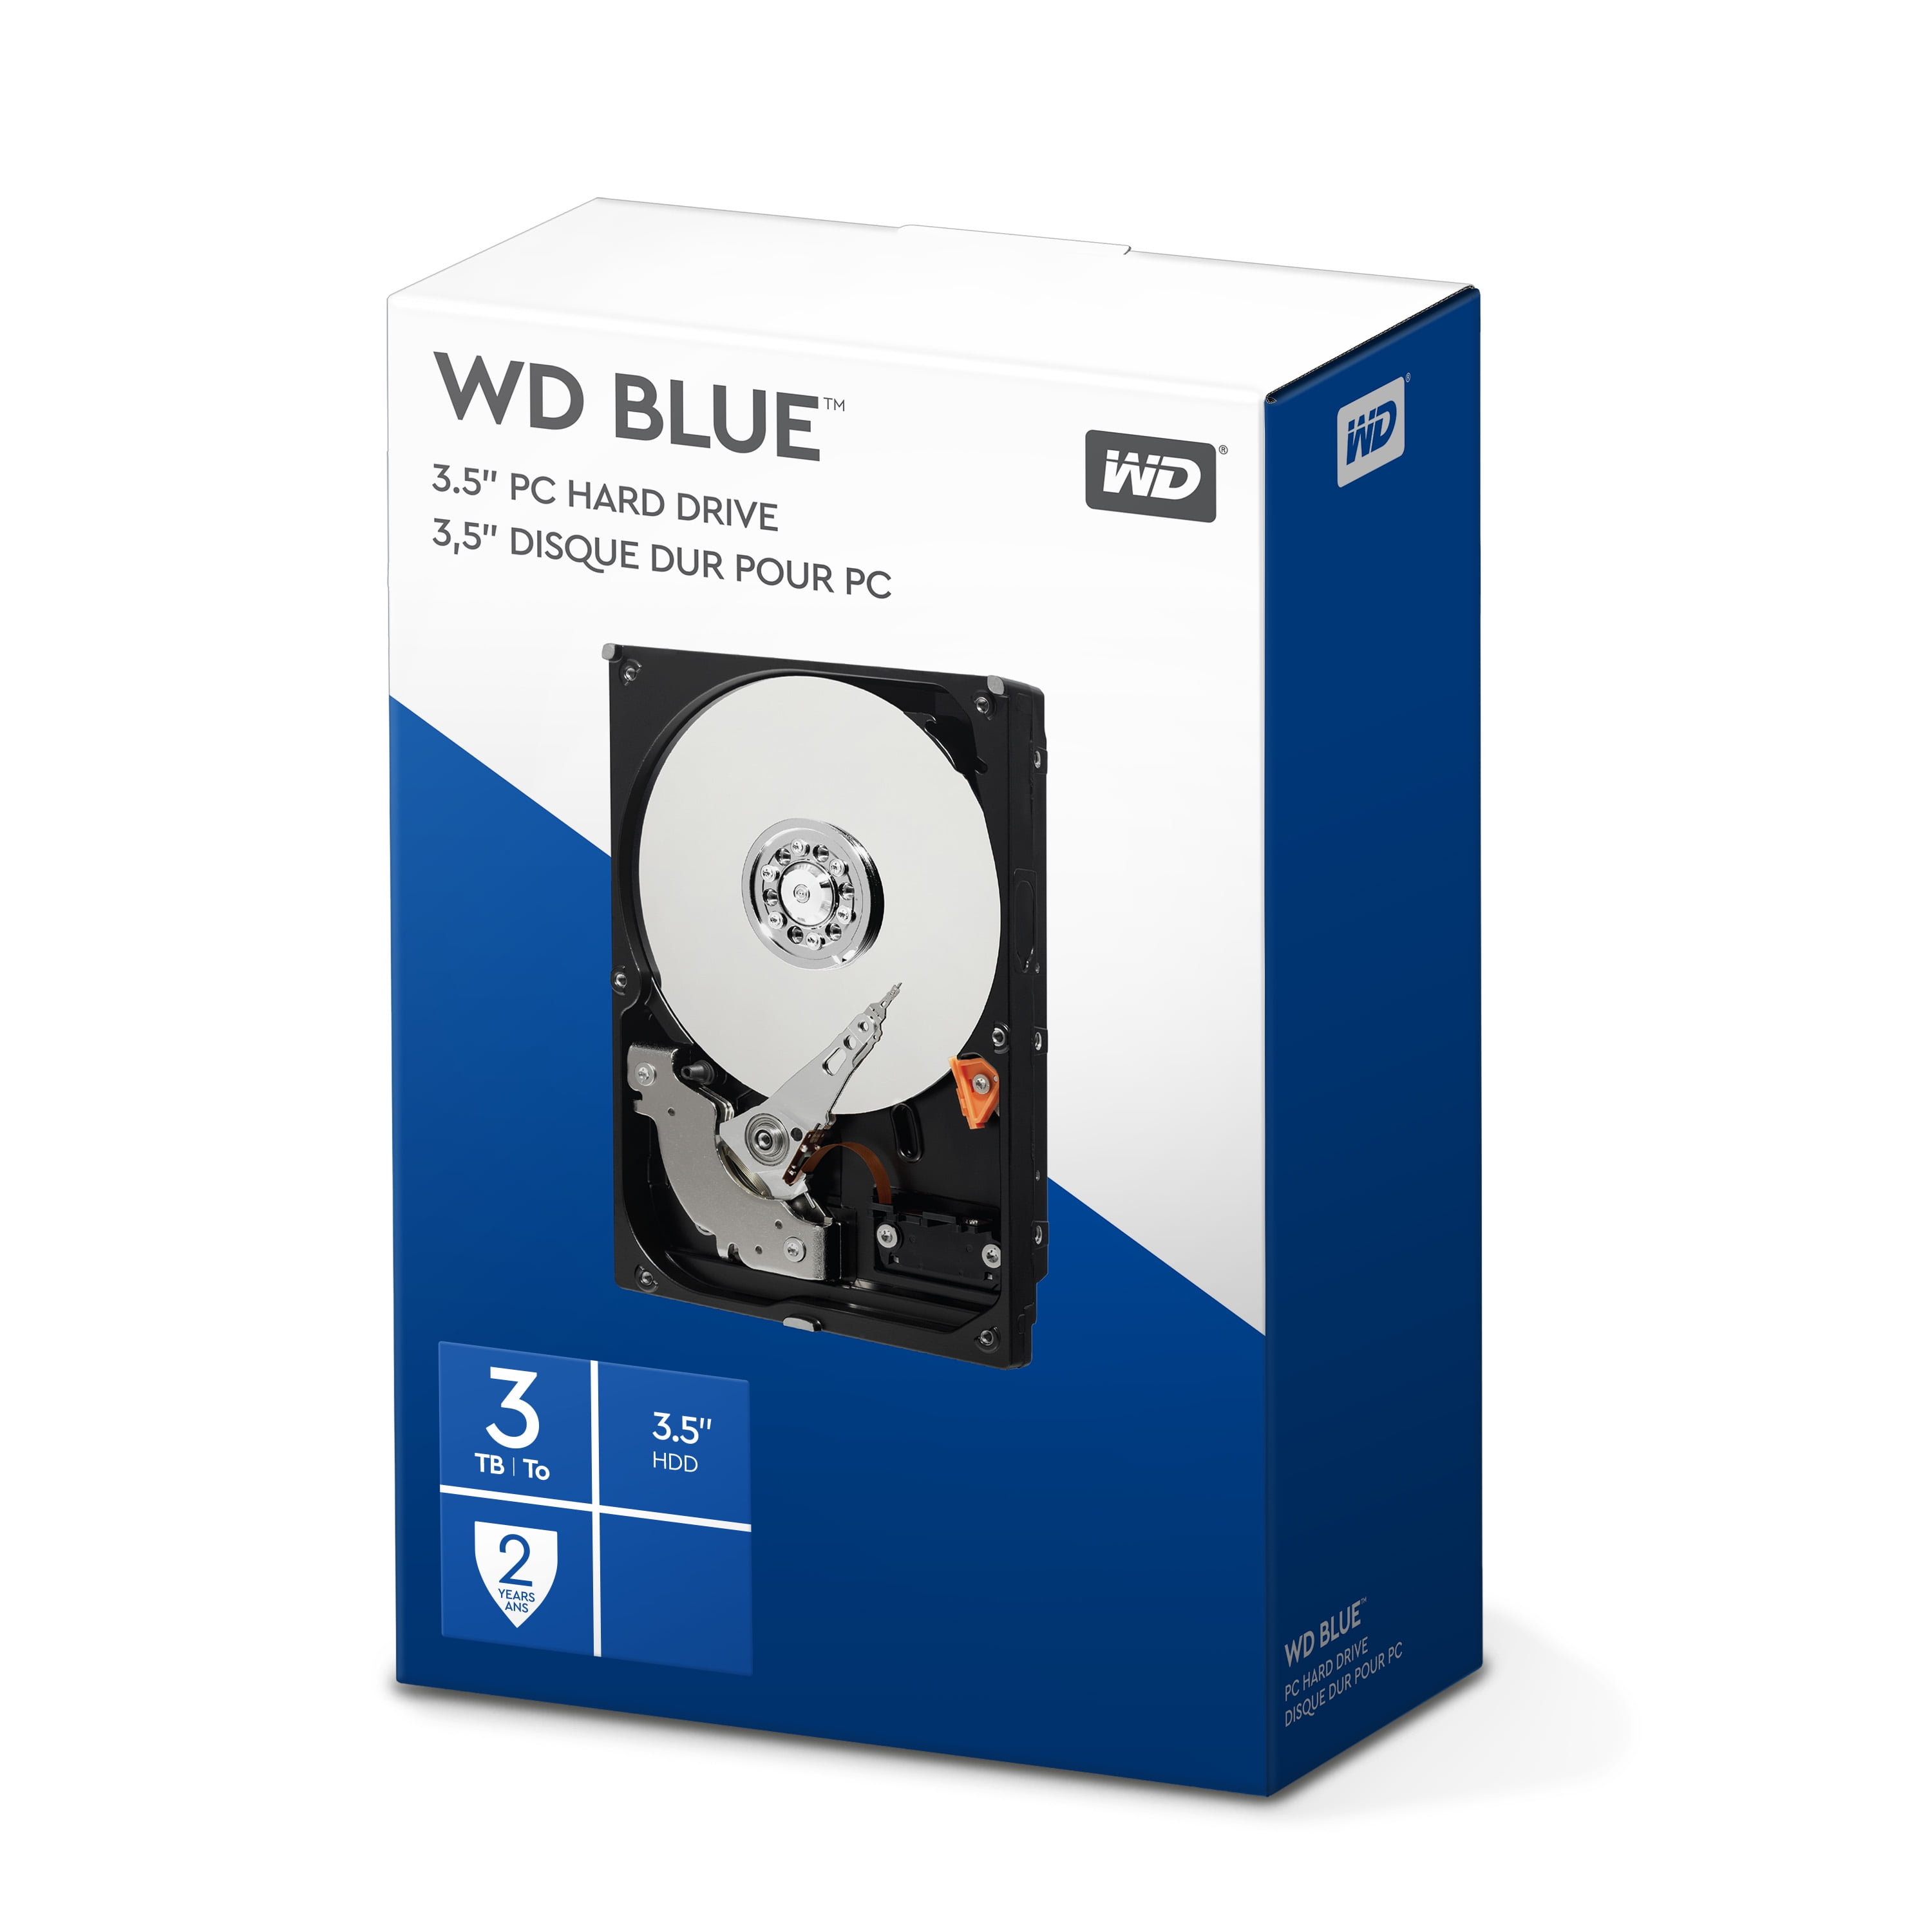 WD Blue 3TB PC Hard Drive - 5400 RPM Class, SATA 6 Gb/s, 64 MB Cache, 3.5  - WDBH2D0030HNC-NRSN